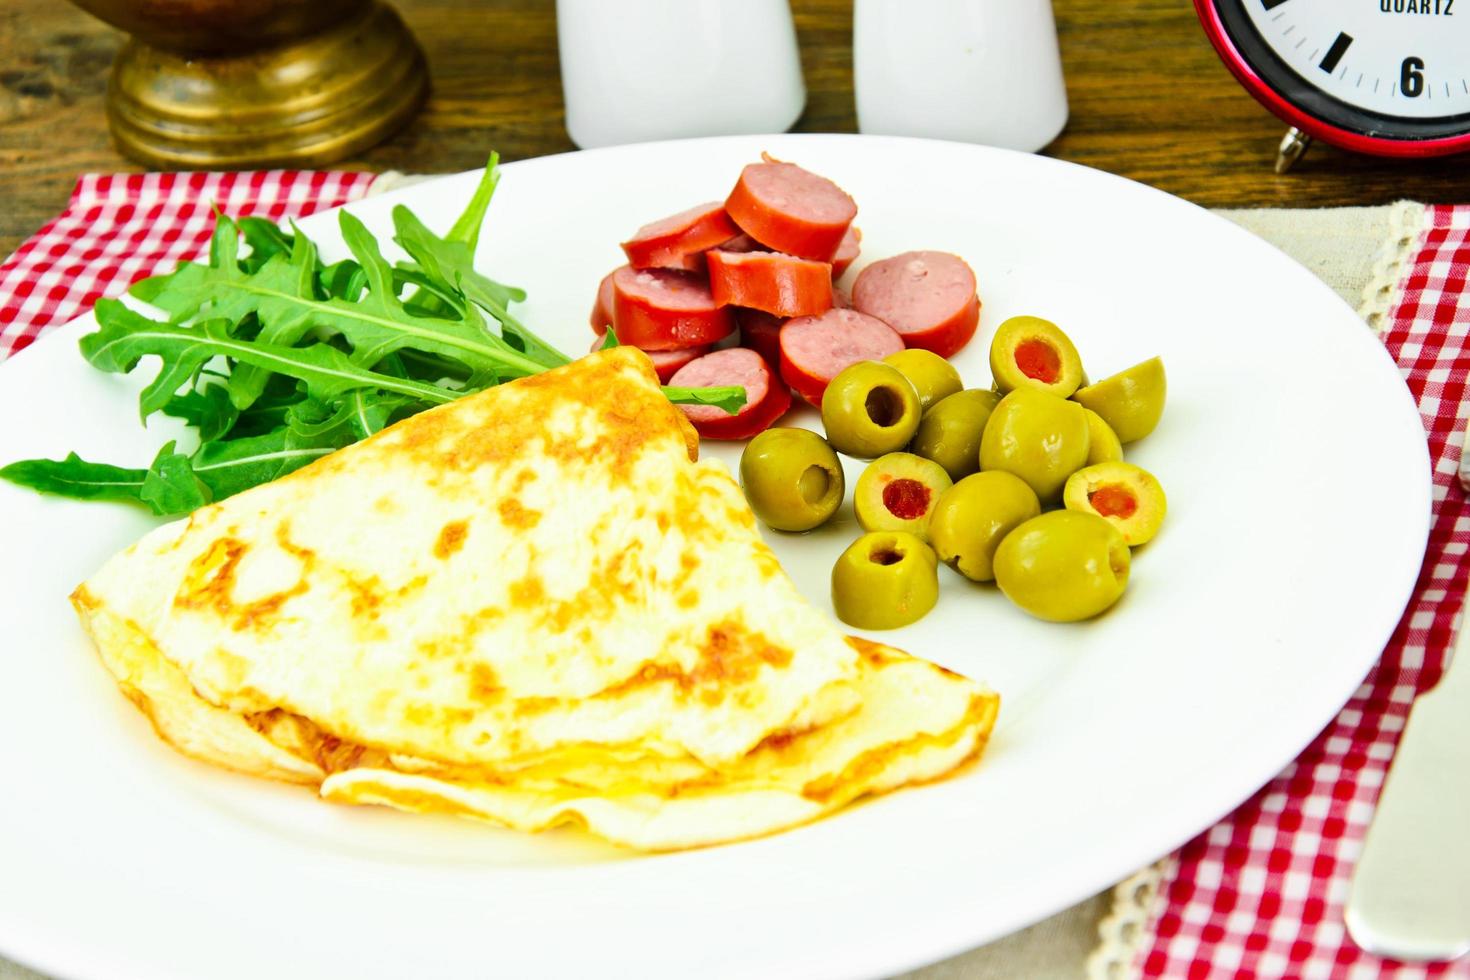 Comida sana y dietética, huevos revueltos con verduras. foto